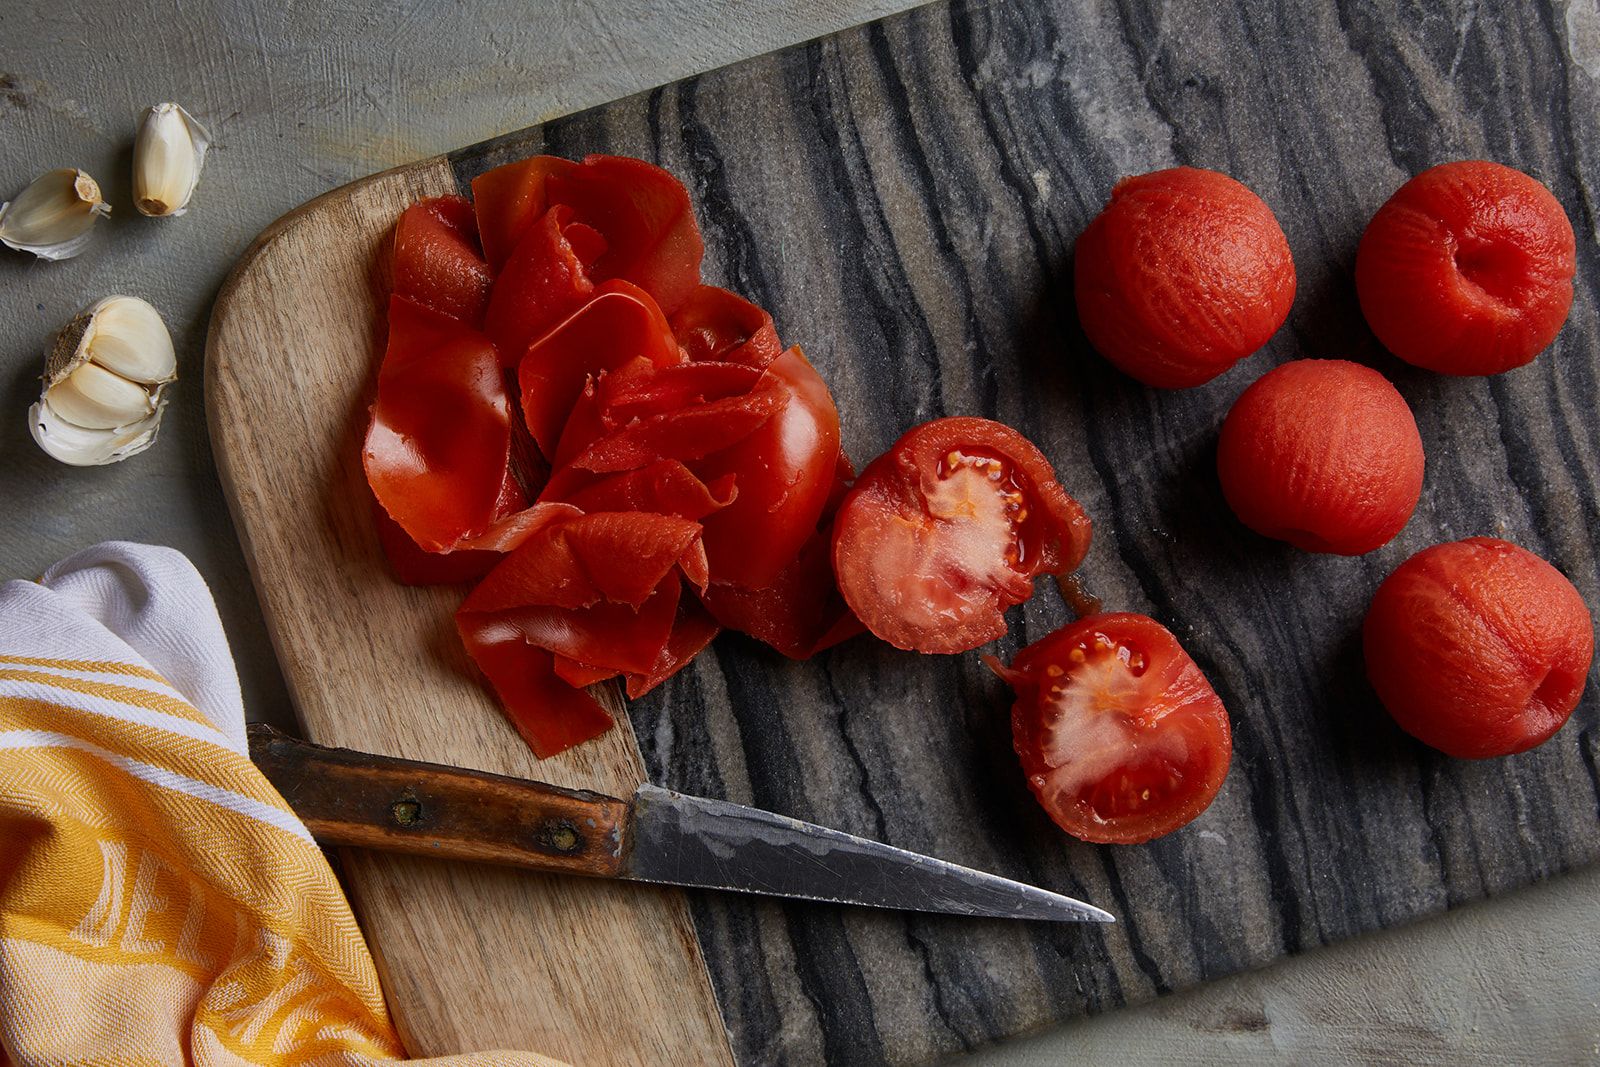 לקלף את העגבניות, לחתוך לרבעים ולהוציא את גרעיני העגבניה לכלי קטן.